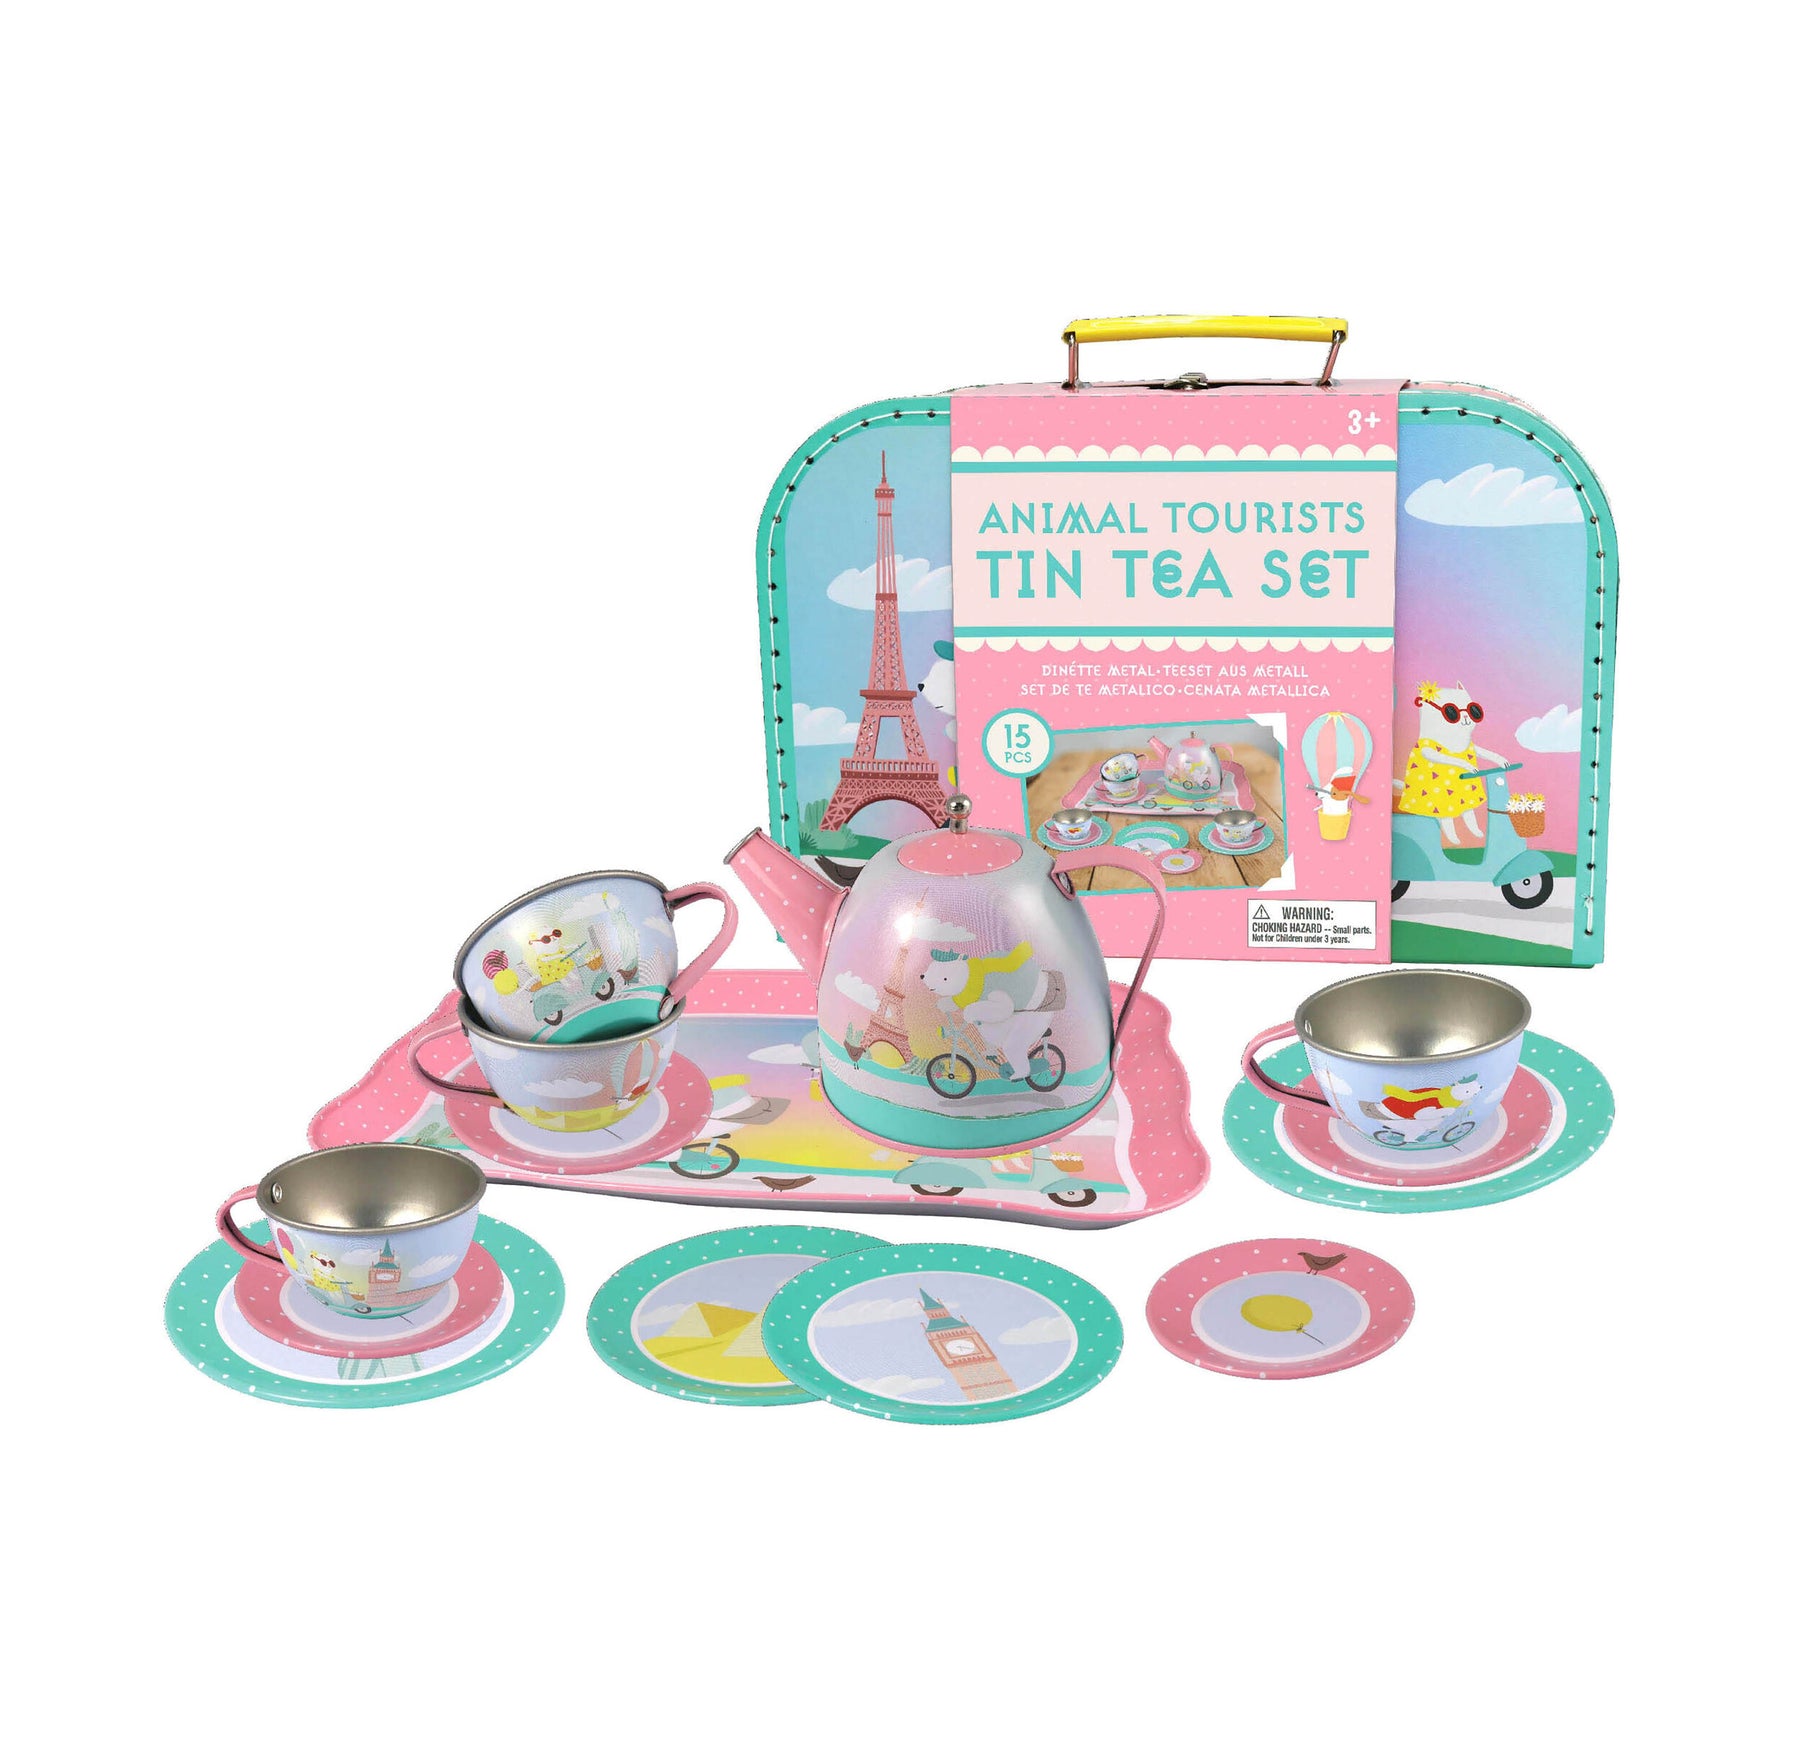 Animal Tourists Tin Tea Set - JKA Toys